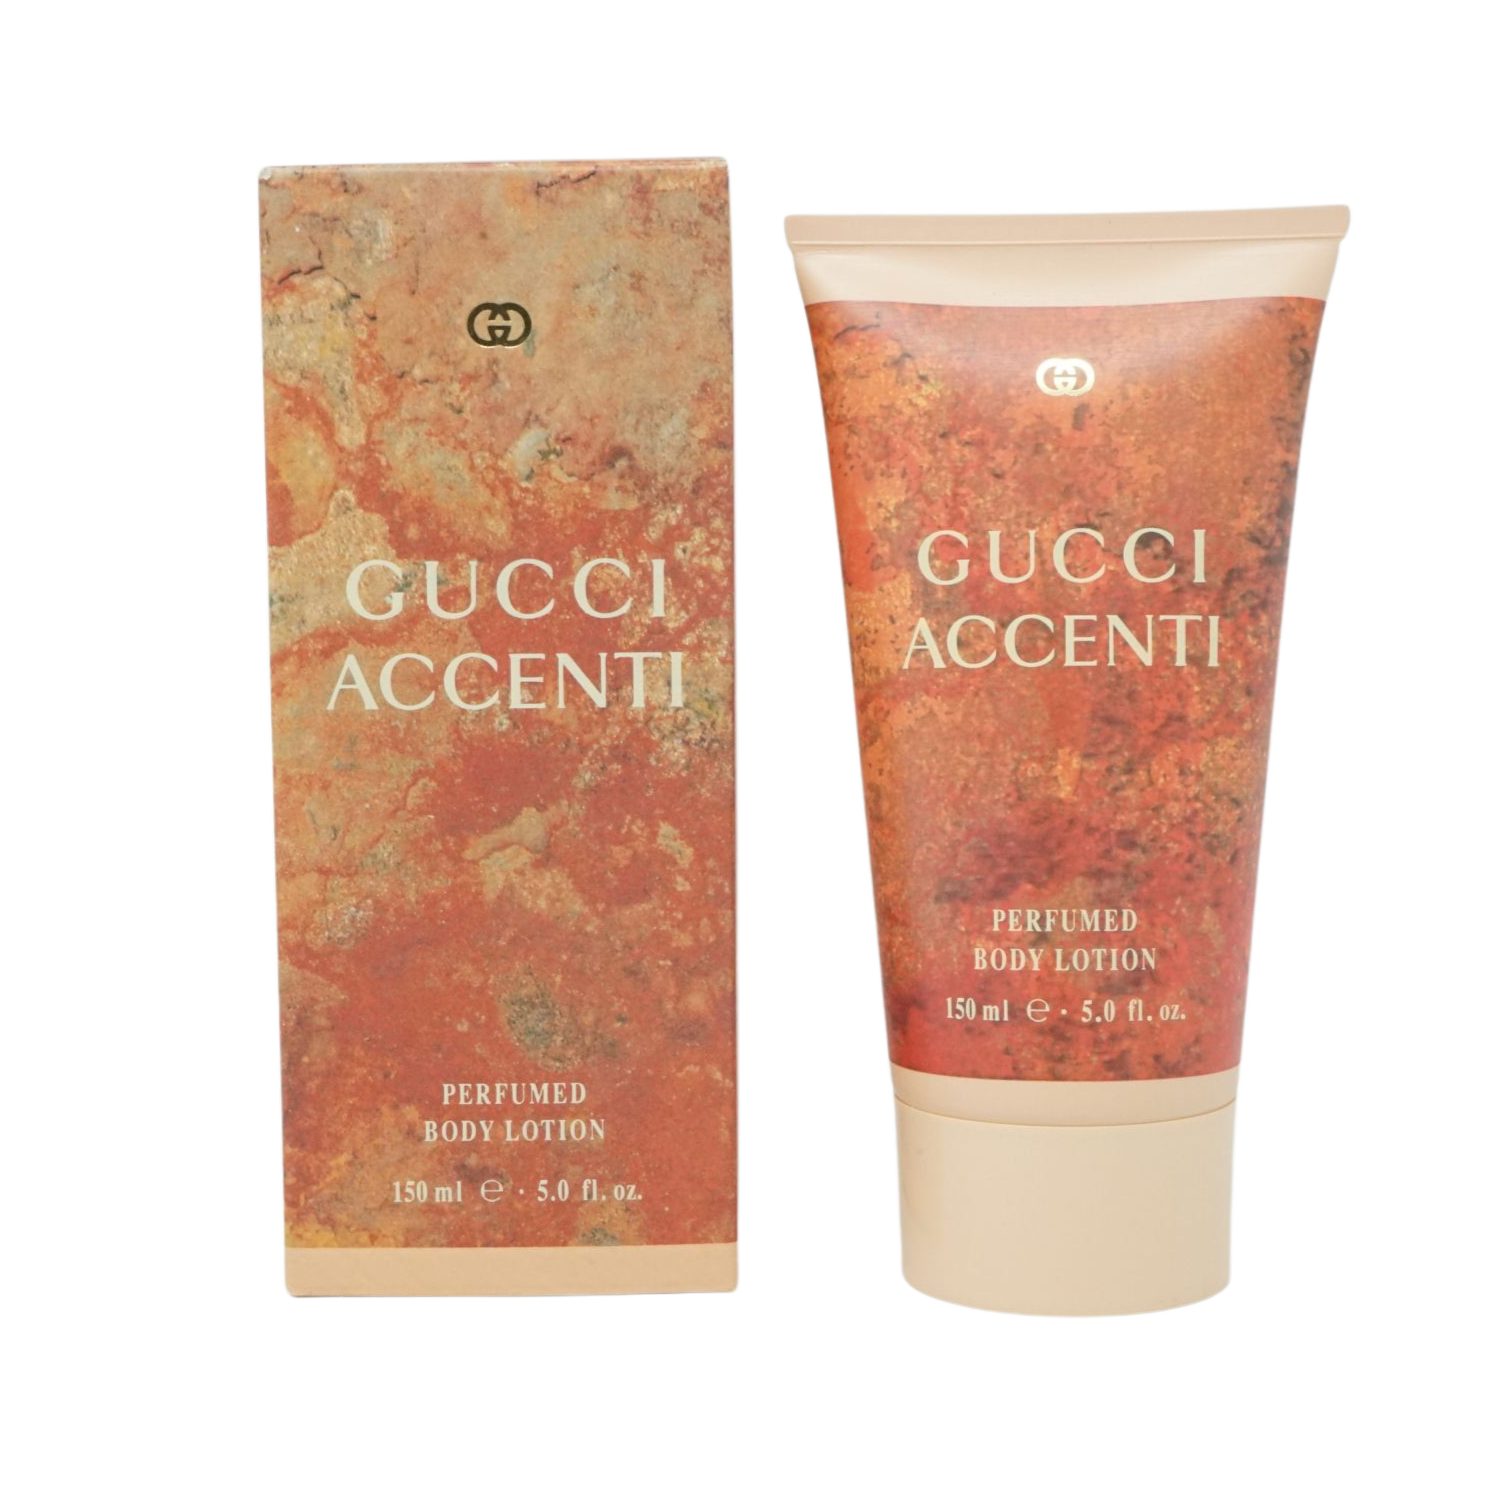 Gucci Perfumed 150ml Eau Body Lotion de Toilette GUCCI Accenti